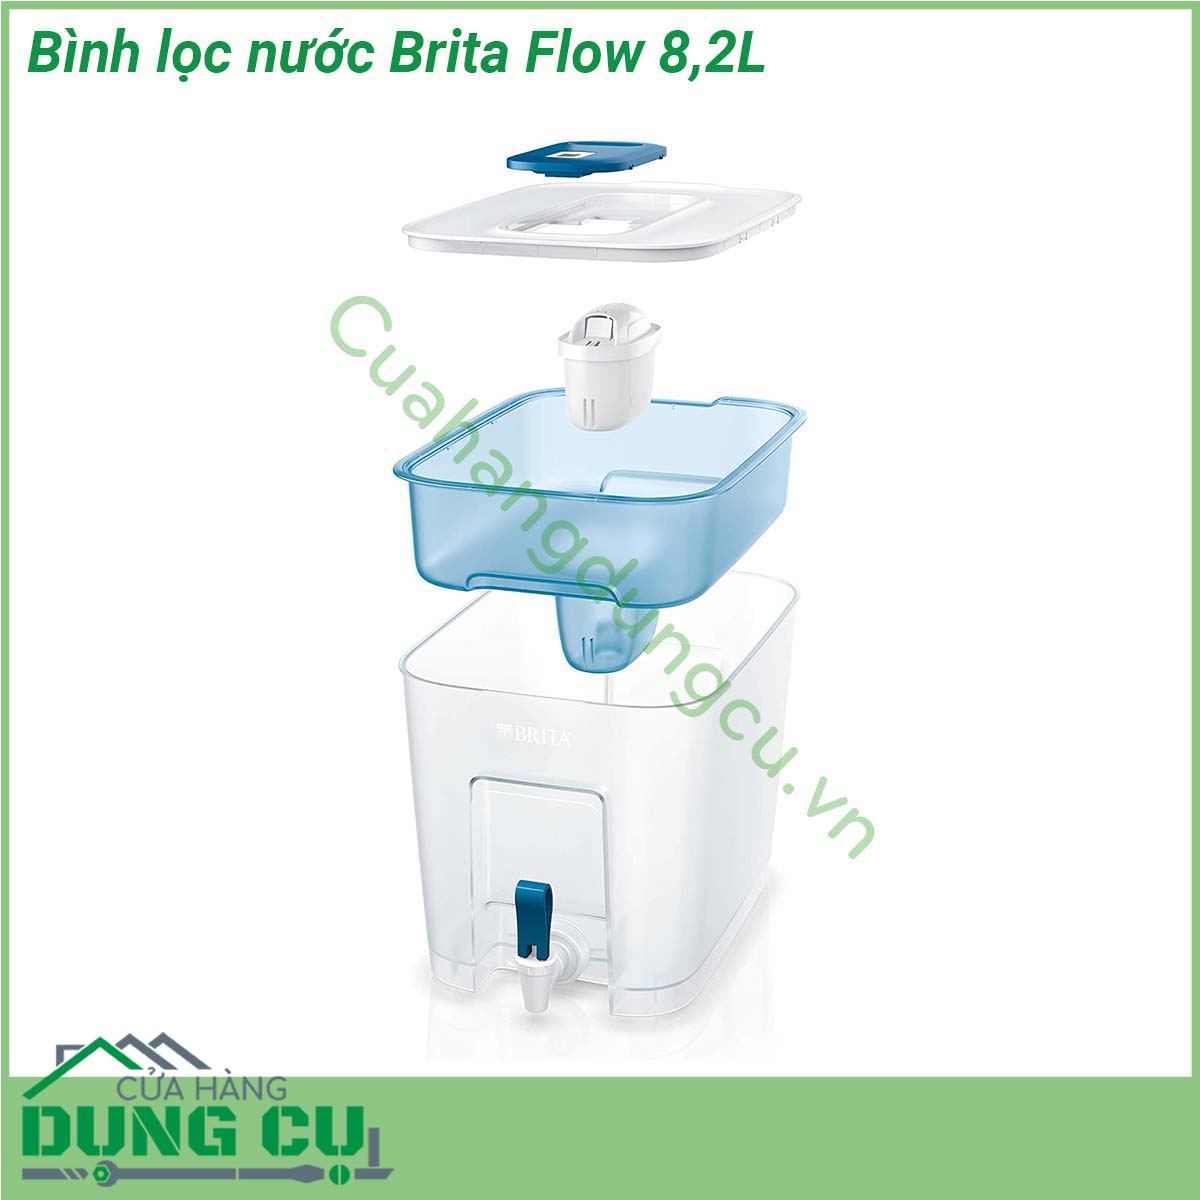 Bình lọc nước Brita Flow 8 2L thiết kế gọn nhẹ nên dễ dàng di chuyển bất cứ nơi đâu trong nhà có thể cho vào tủ lạnh hoặc ngăn tủ cũng có thể mang theo khi đi du lịch… Vỏ bình lọc được làm bằng nhựa cao cấp không chứa BPA không gây ra bất kì phản ứng đáng lo ngại nào cho sức khỏe đảm bảo an toàn cho người sử dụng